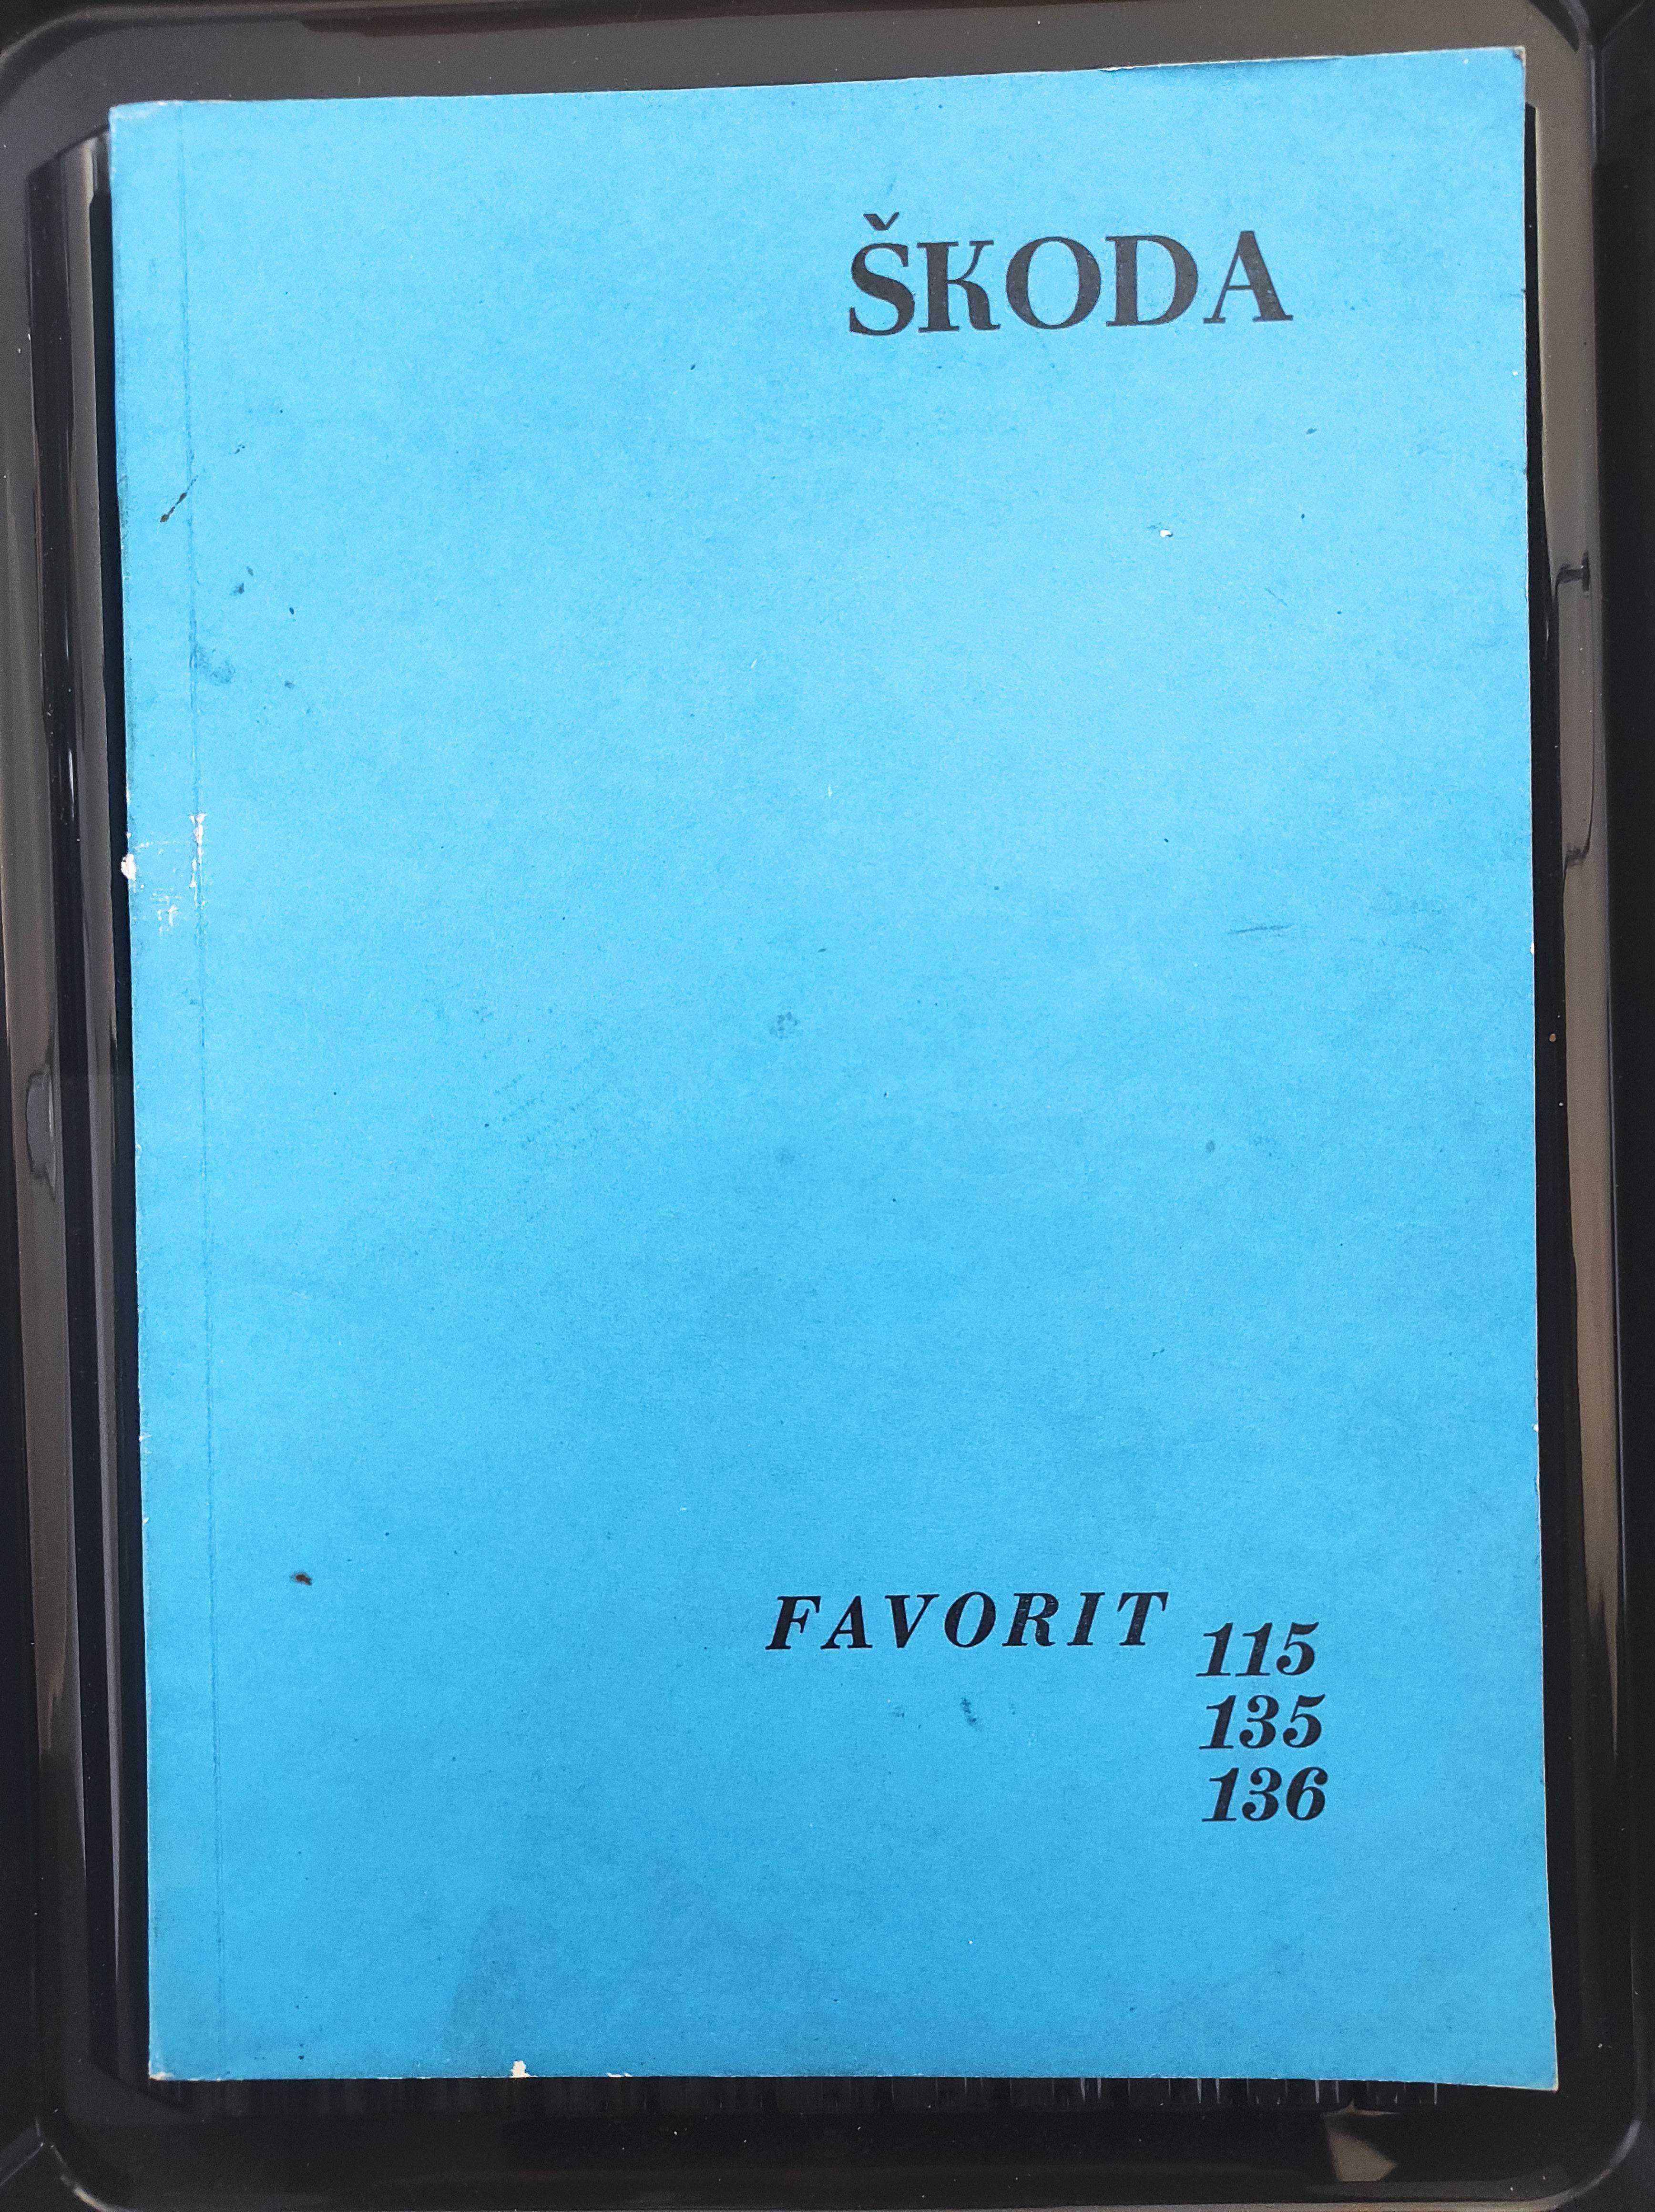 Podręcznik warsztatowy - Skoda Favorit - wydanie 1, 1989 r.